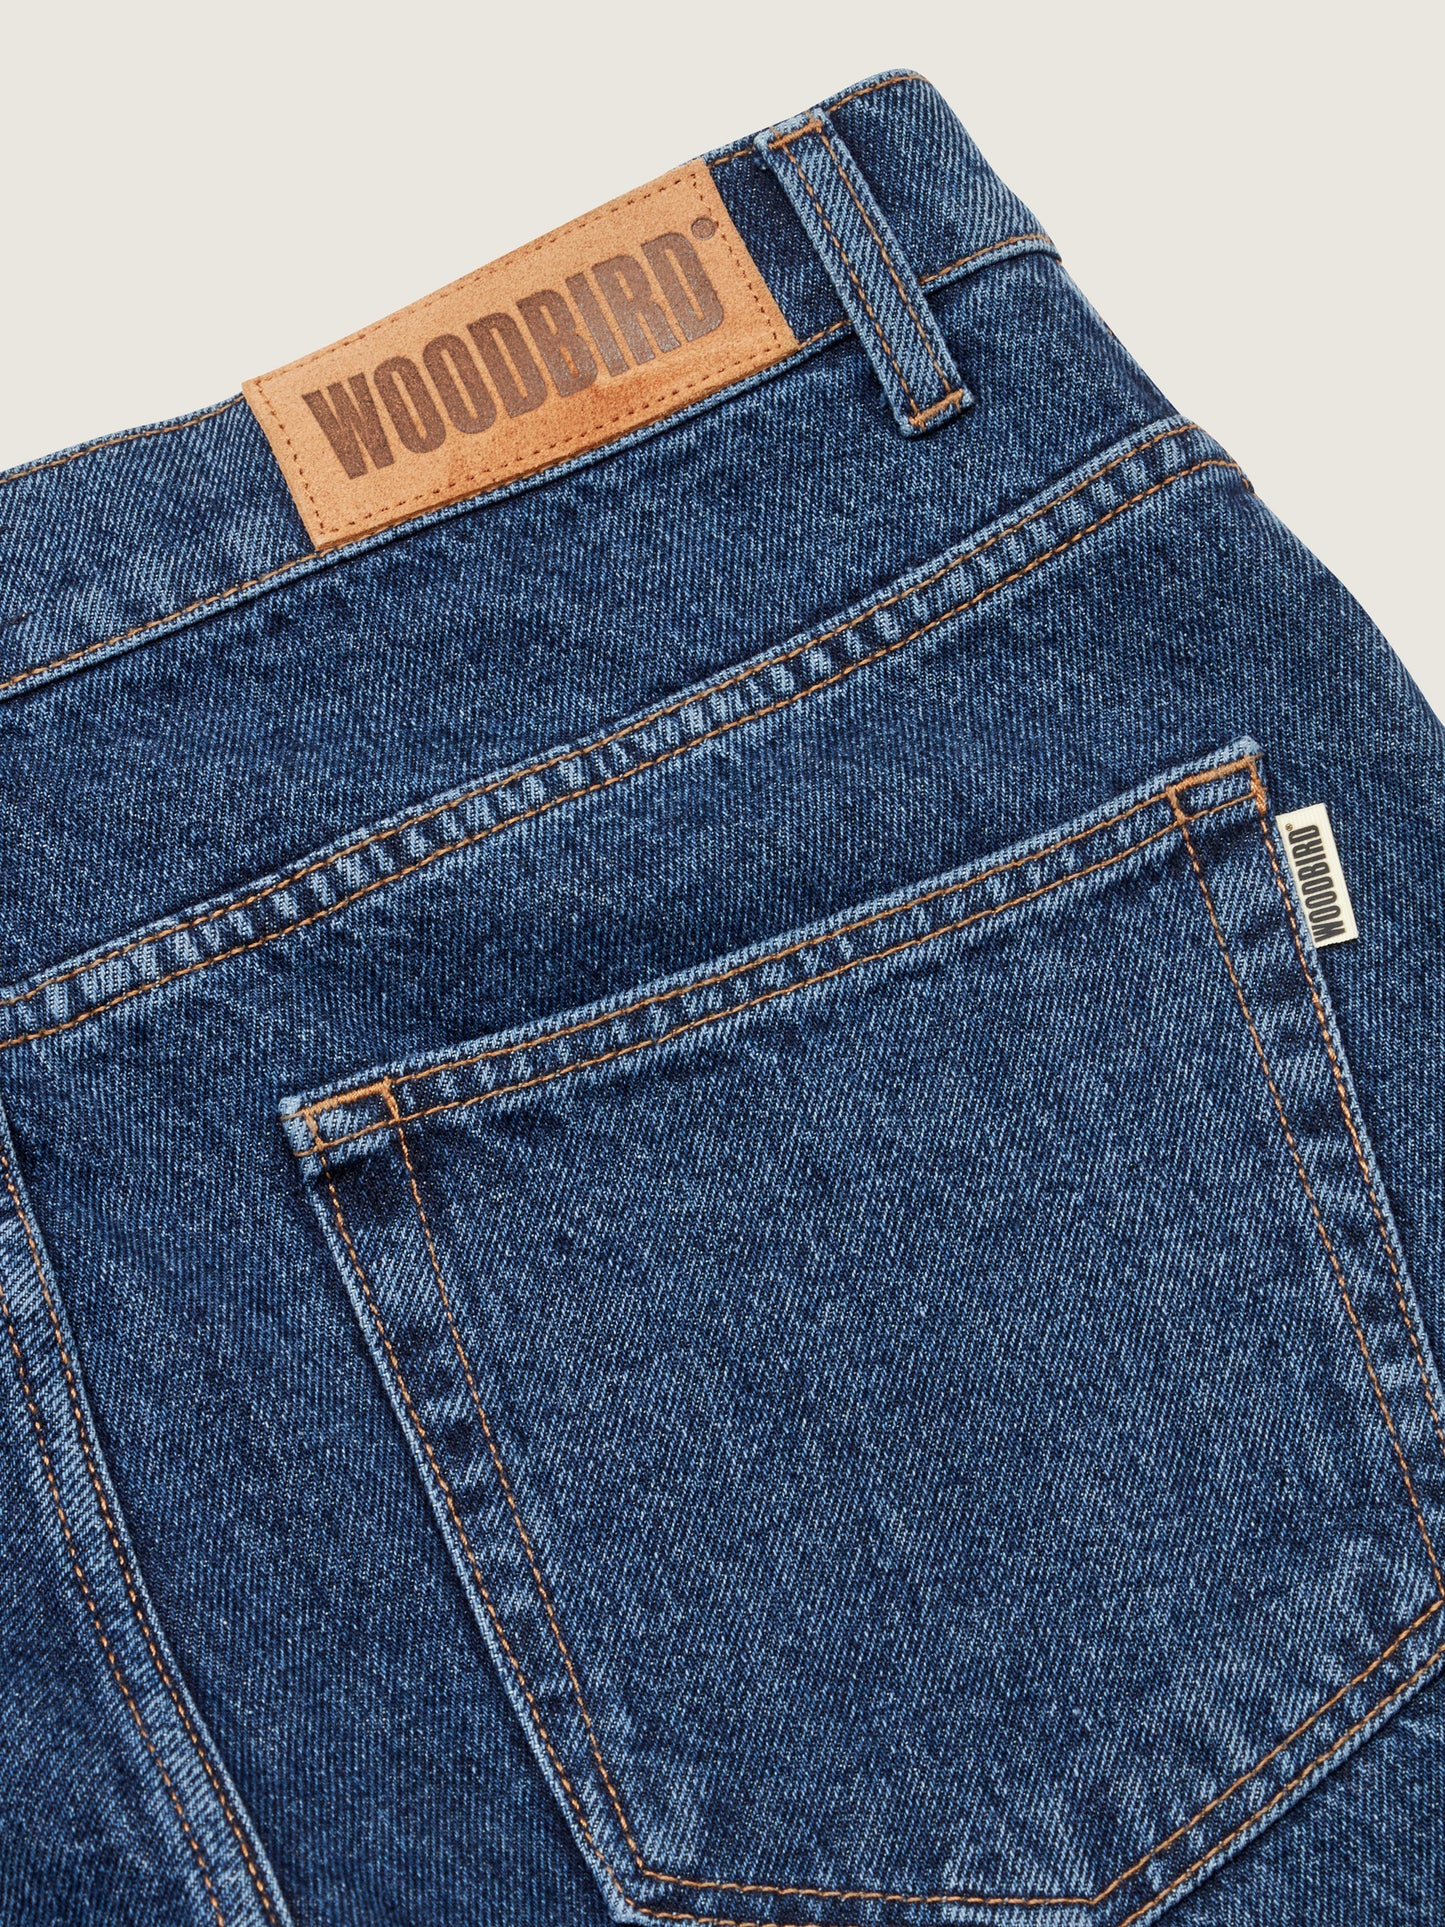 Woodbird Leroy 90s Rinse Jeans Jeans 90sBlue